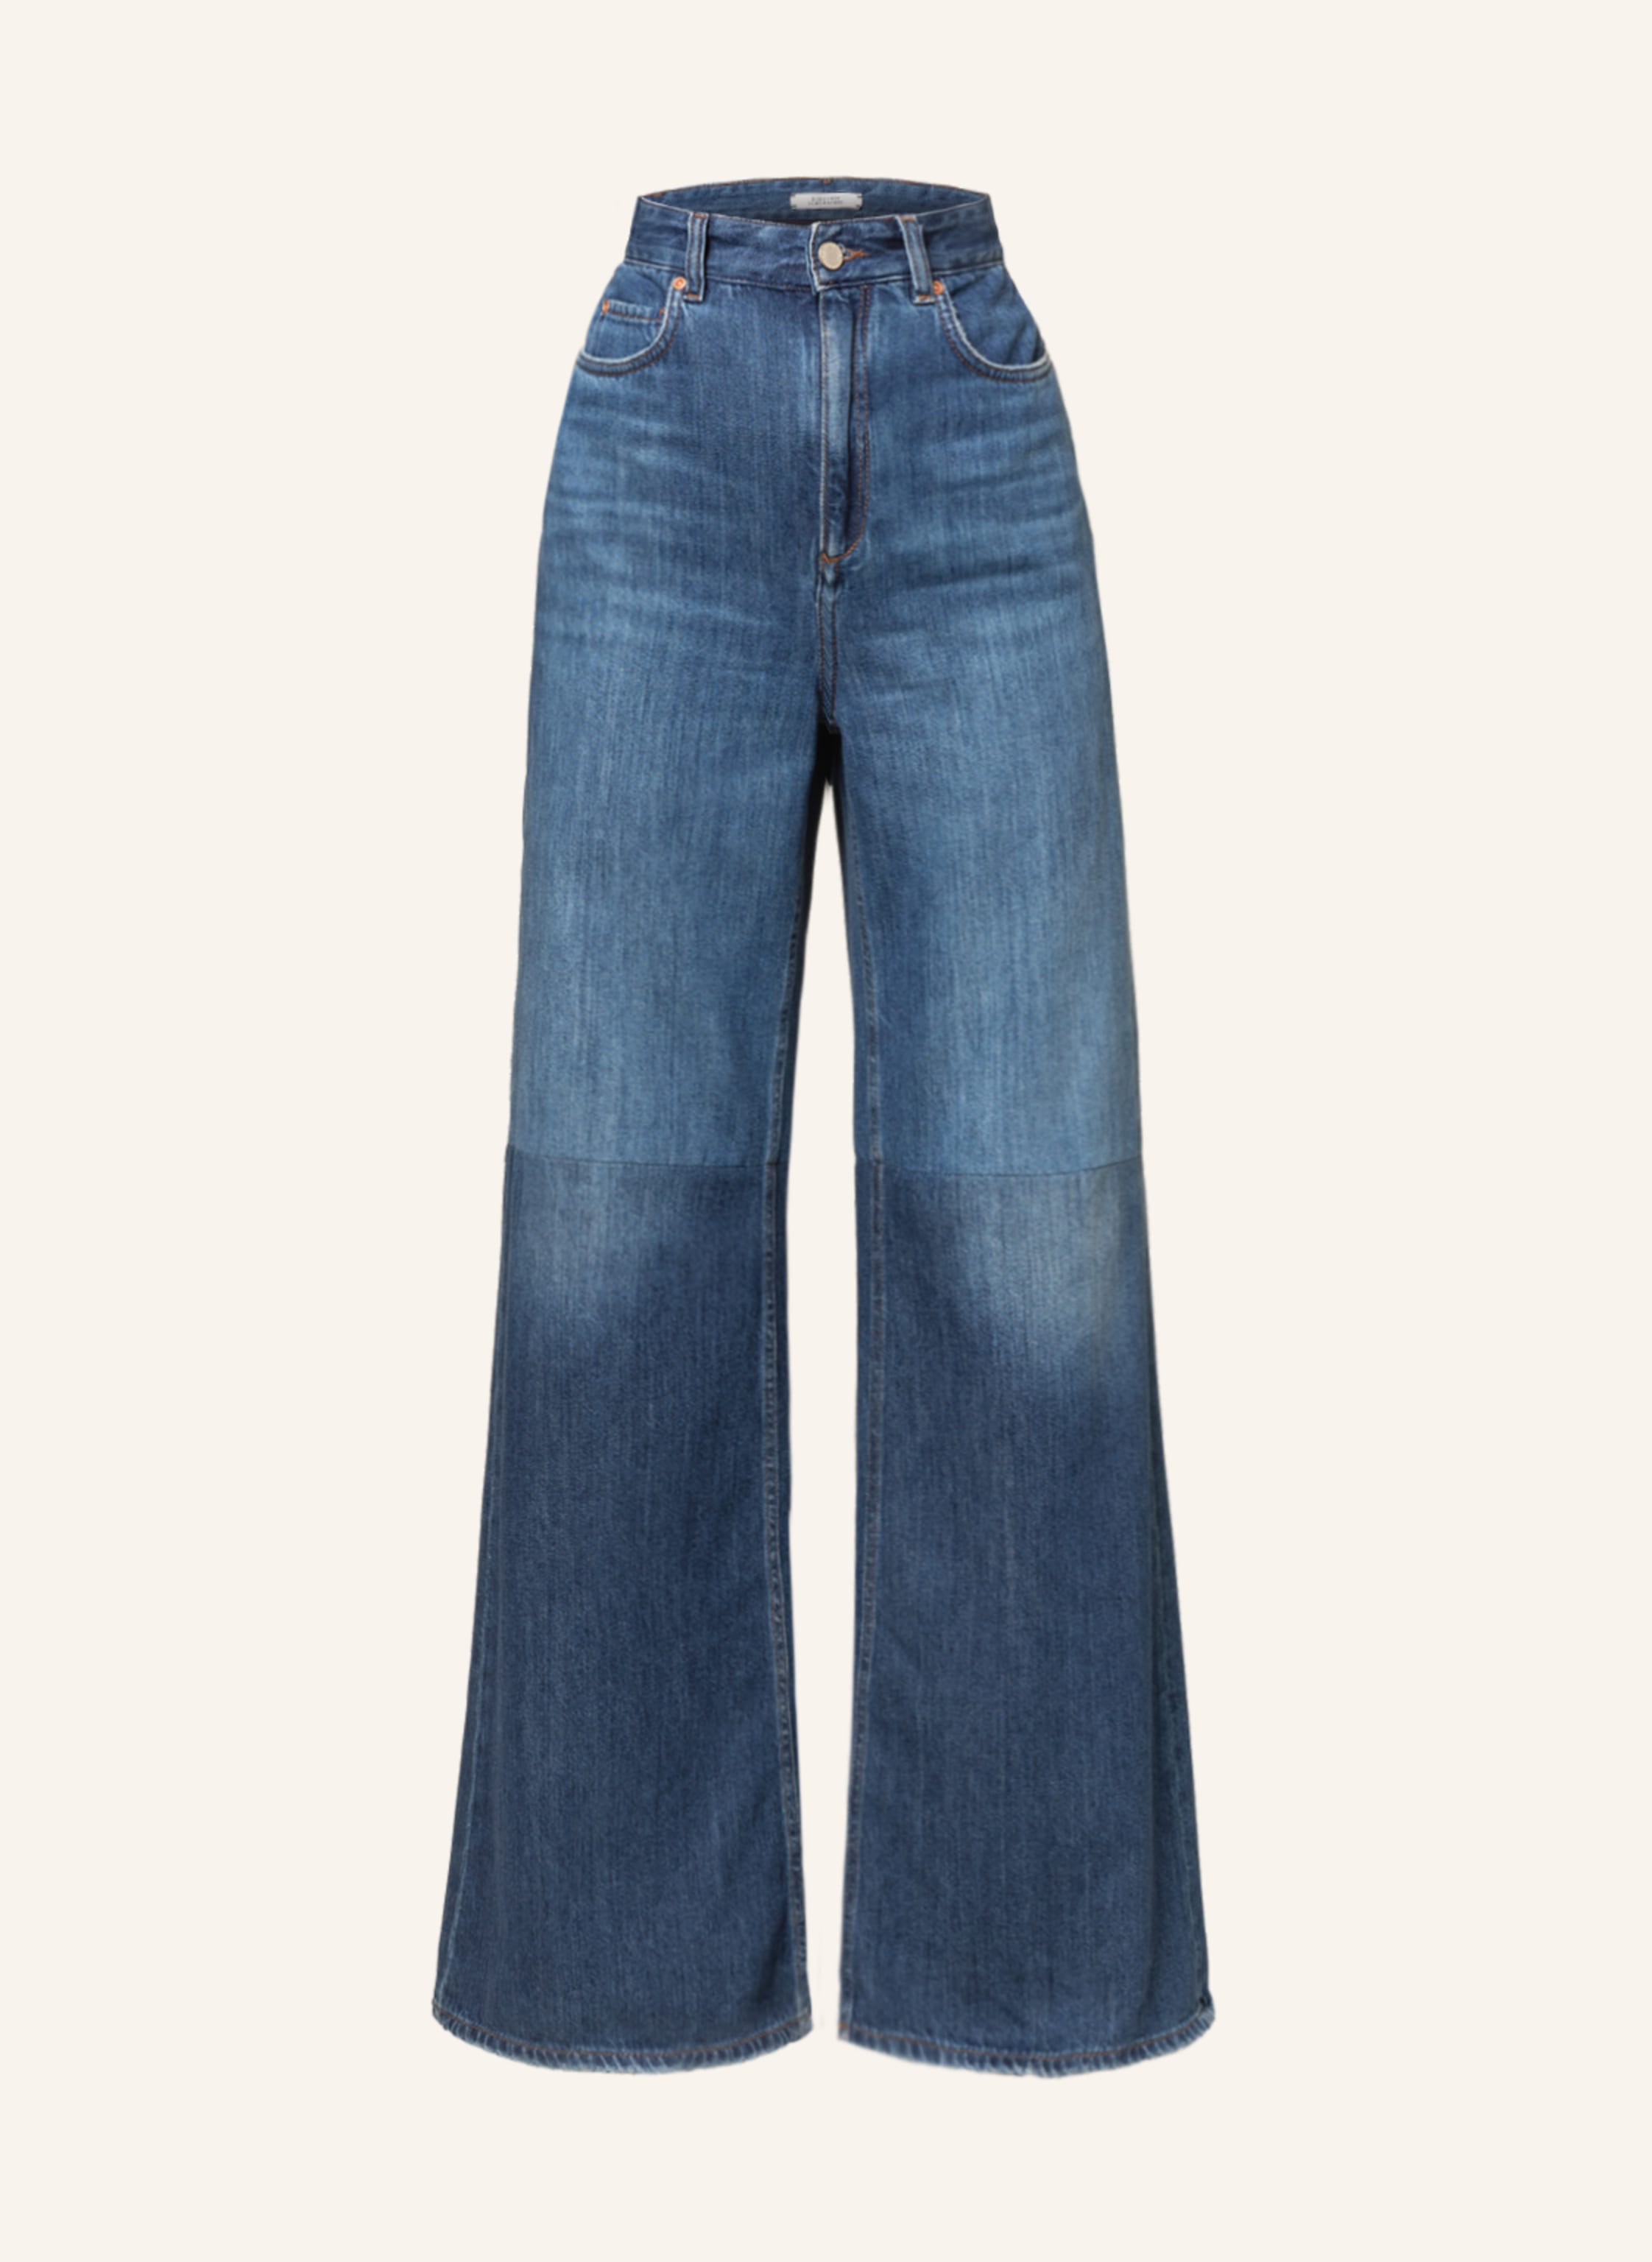 DOROTHEE SCHUMACHER Straight jeans in 867 dark blue